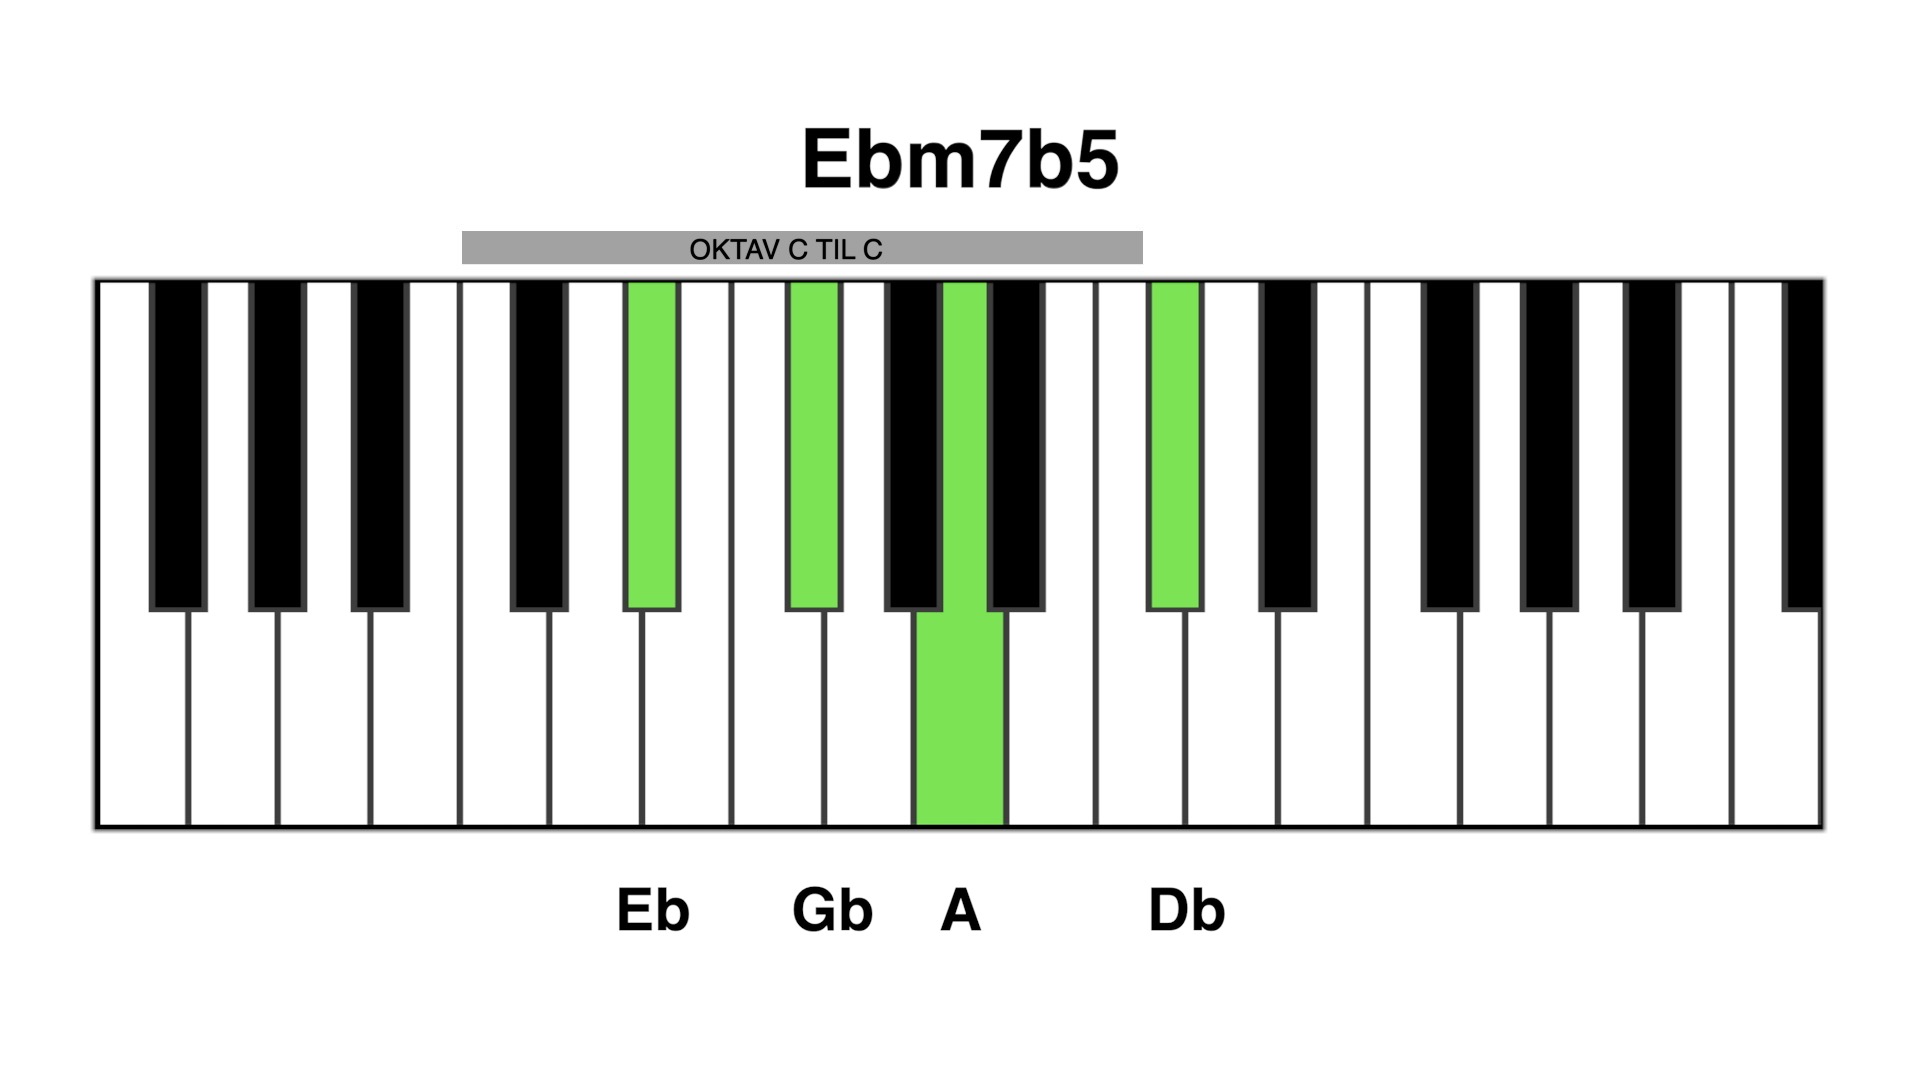 Ebm7b5